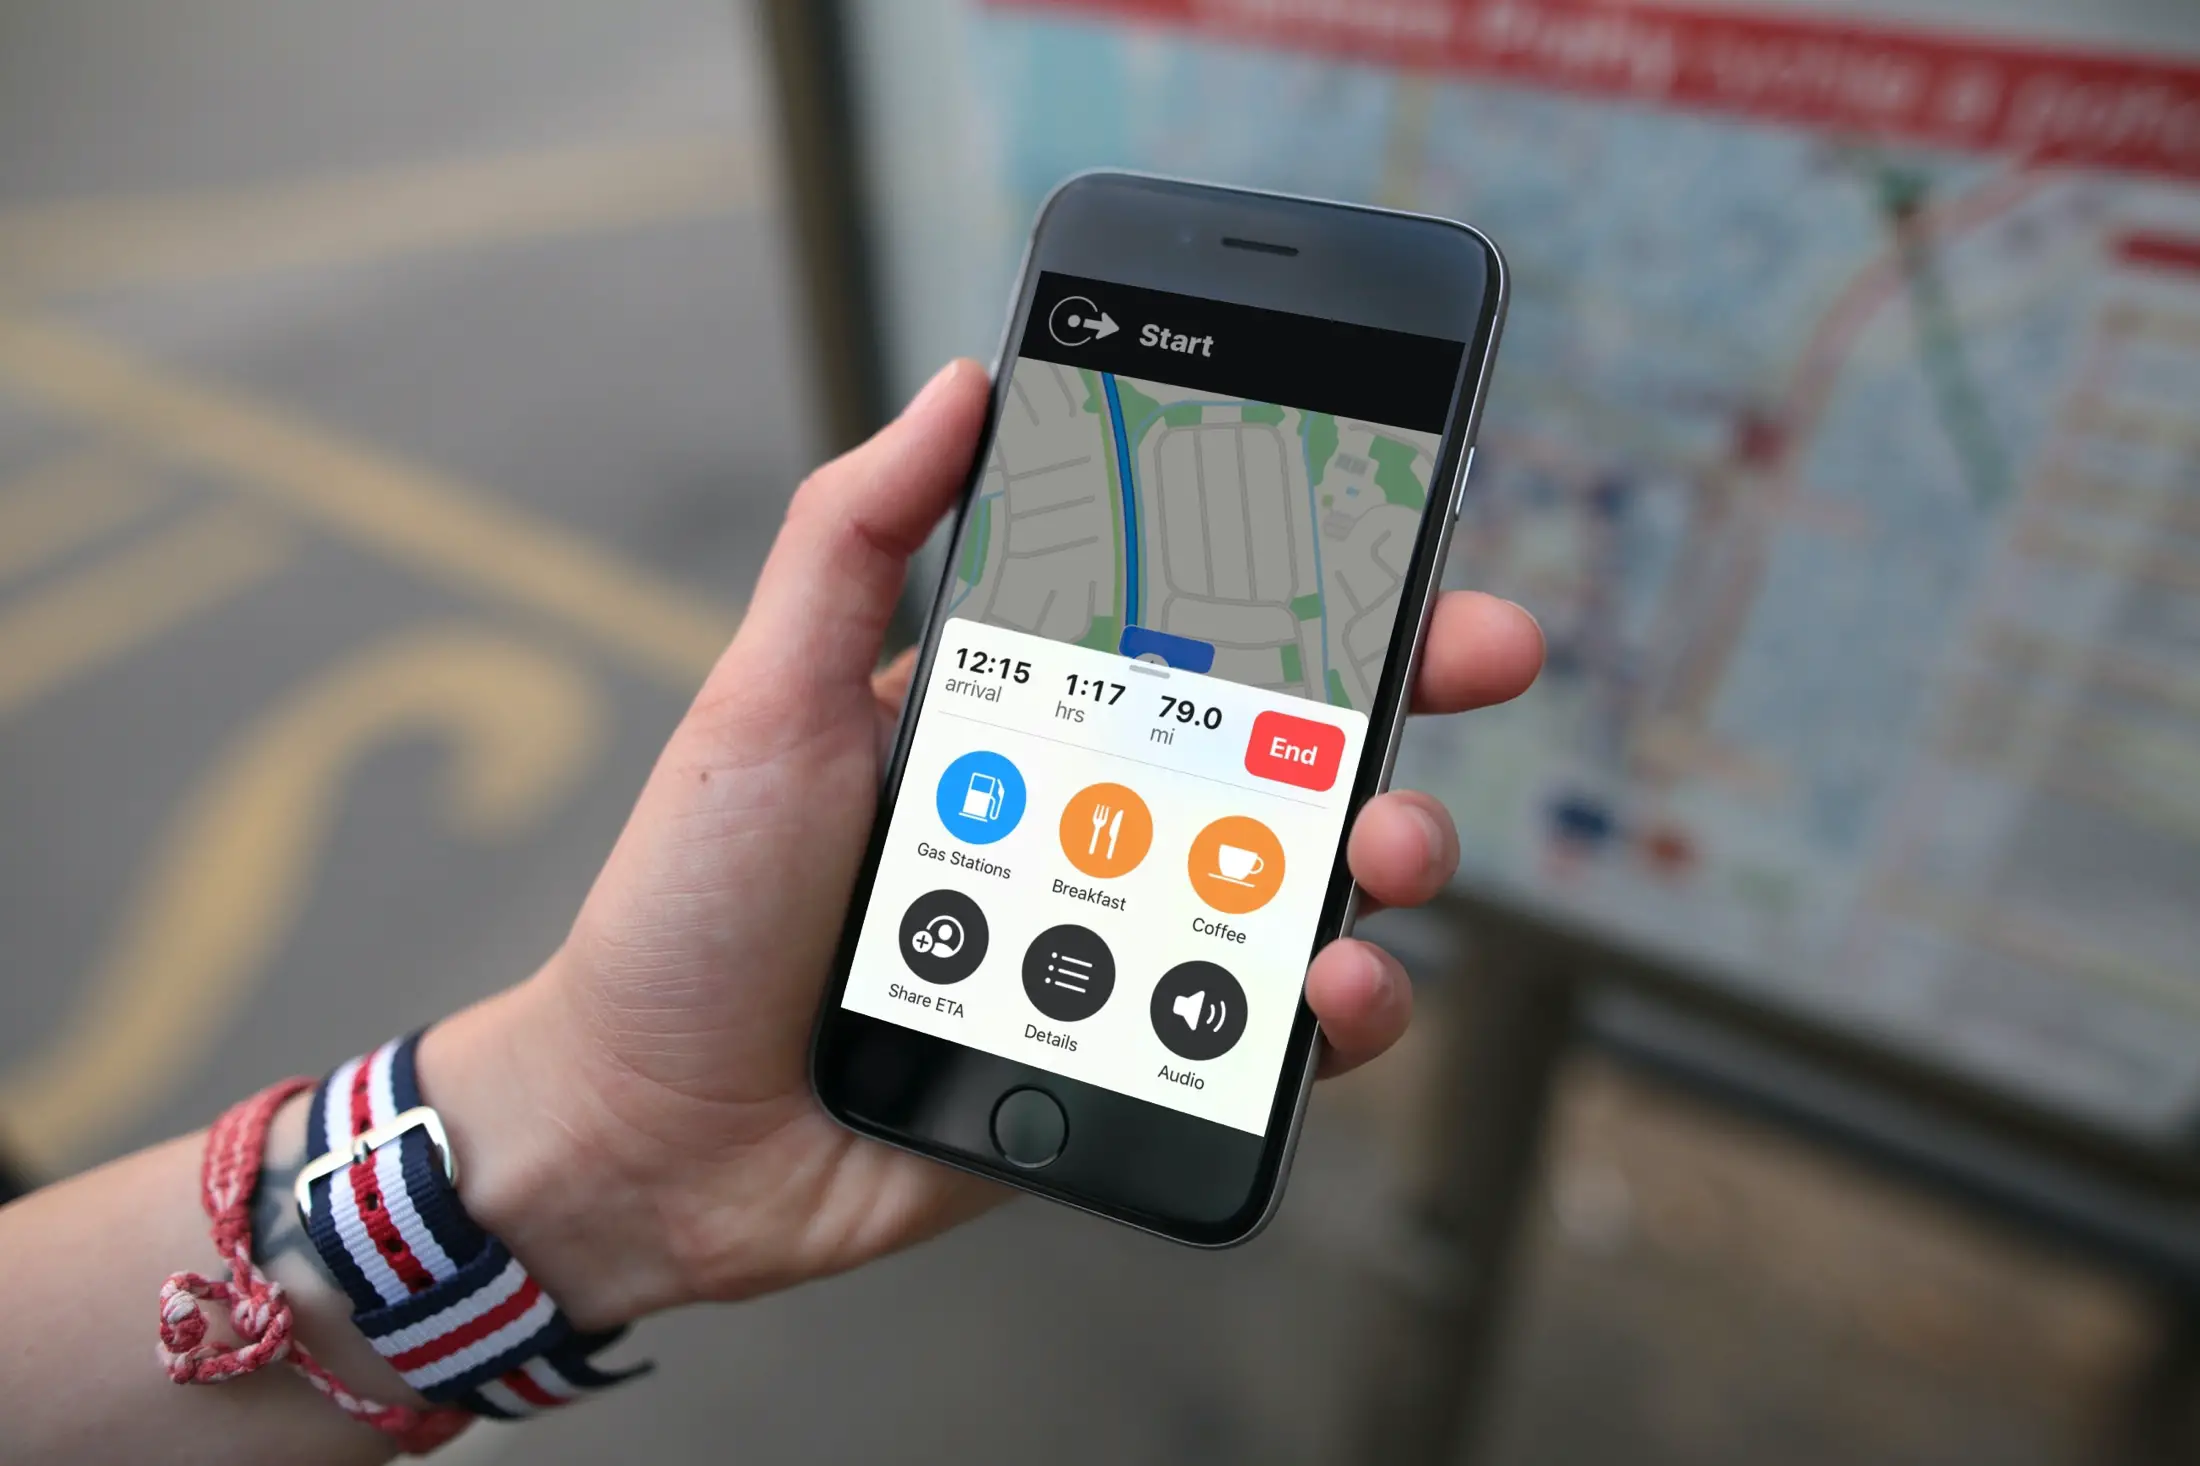 Un'immagine che mostra un iPhone tenuto in mano con l'app Apple Maps che mostra le fermate vicine